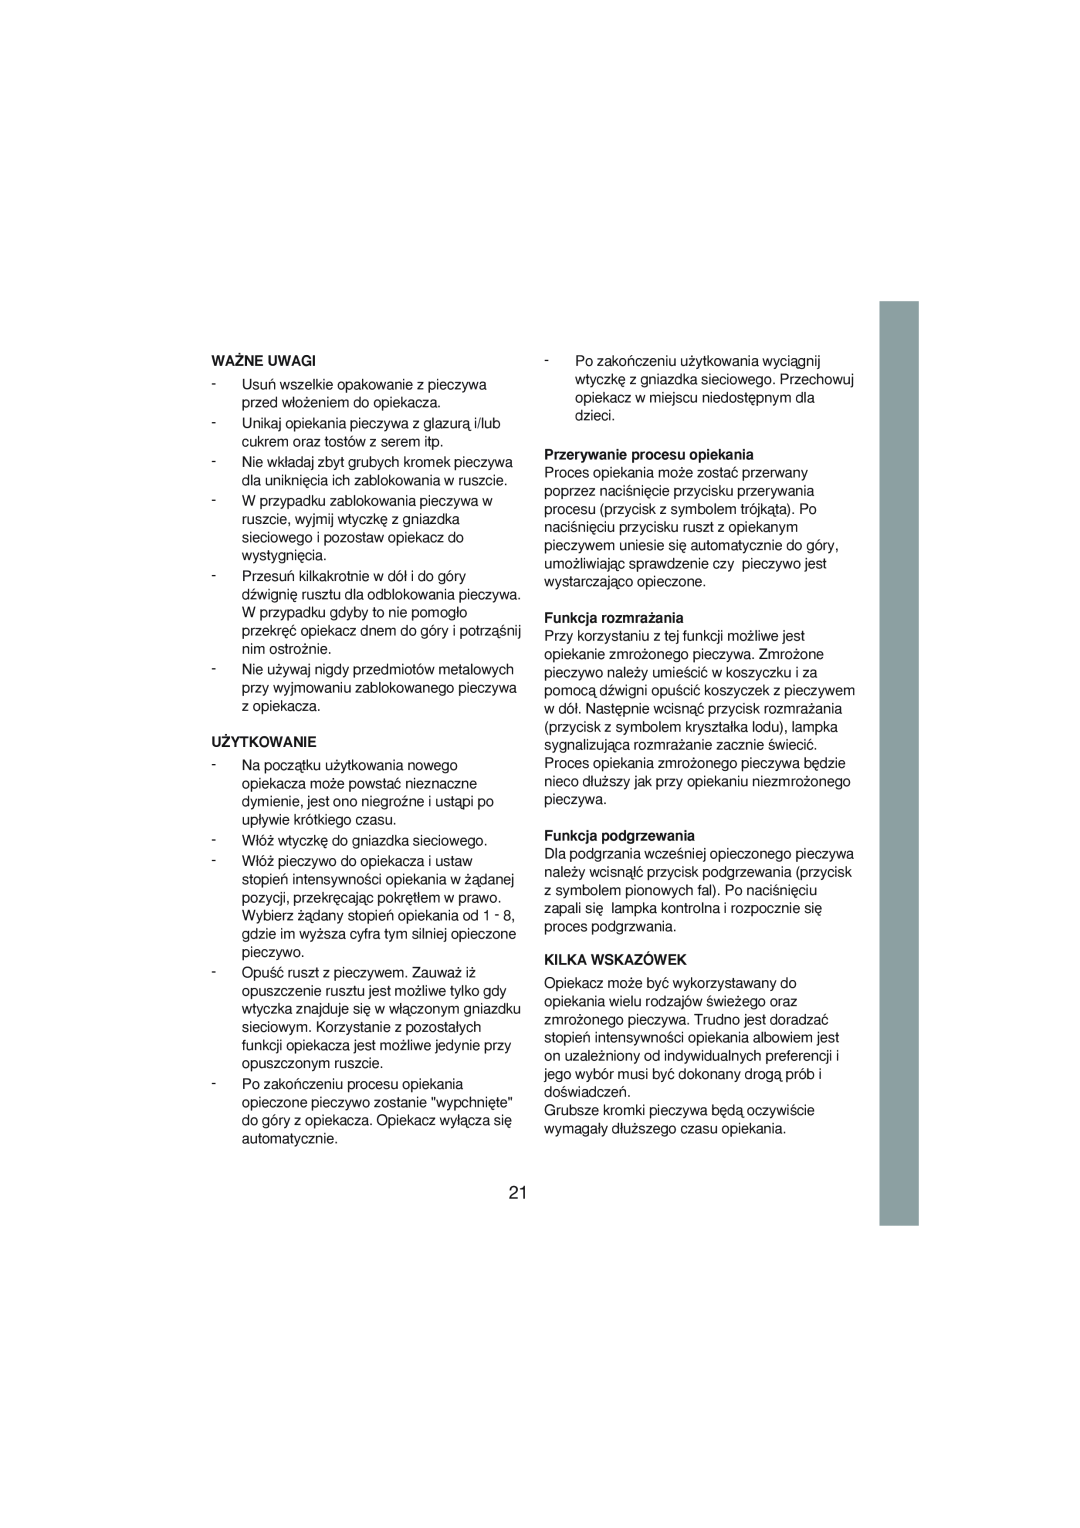 Melissa 243-007 manual Wa˚Ne Uwagi, U˚Ytkowanie, Przerywanie procesu opiekania, Funkcja rozmra˝ania, Funkcja podgrzewania 